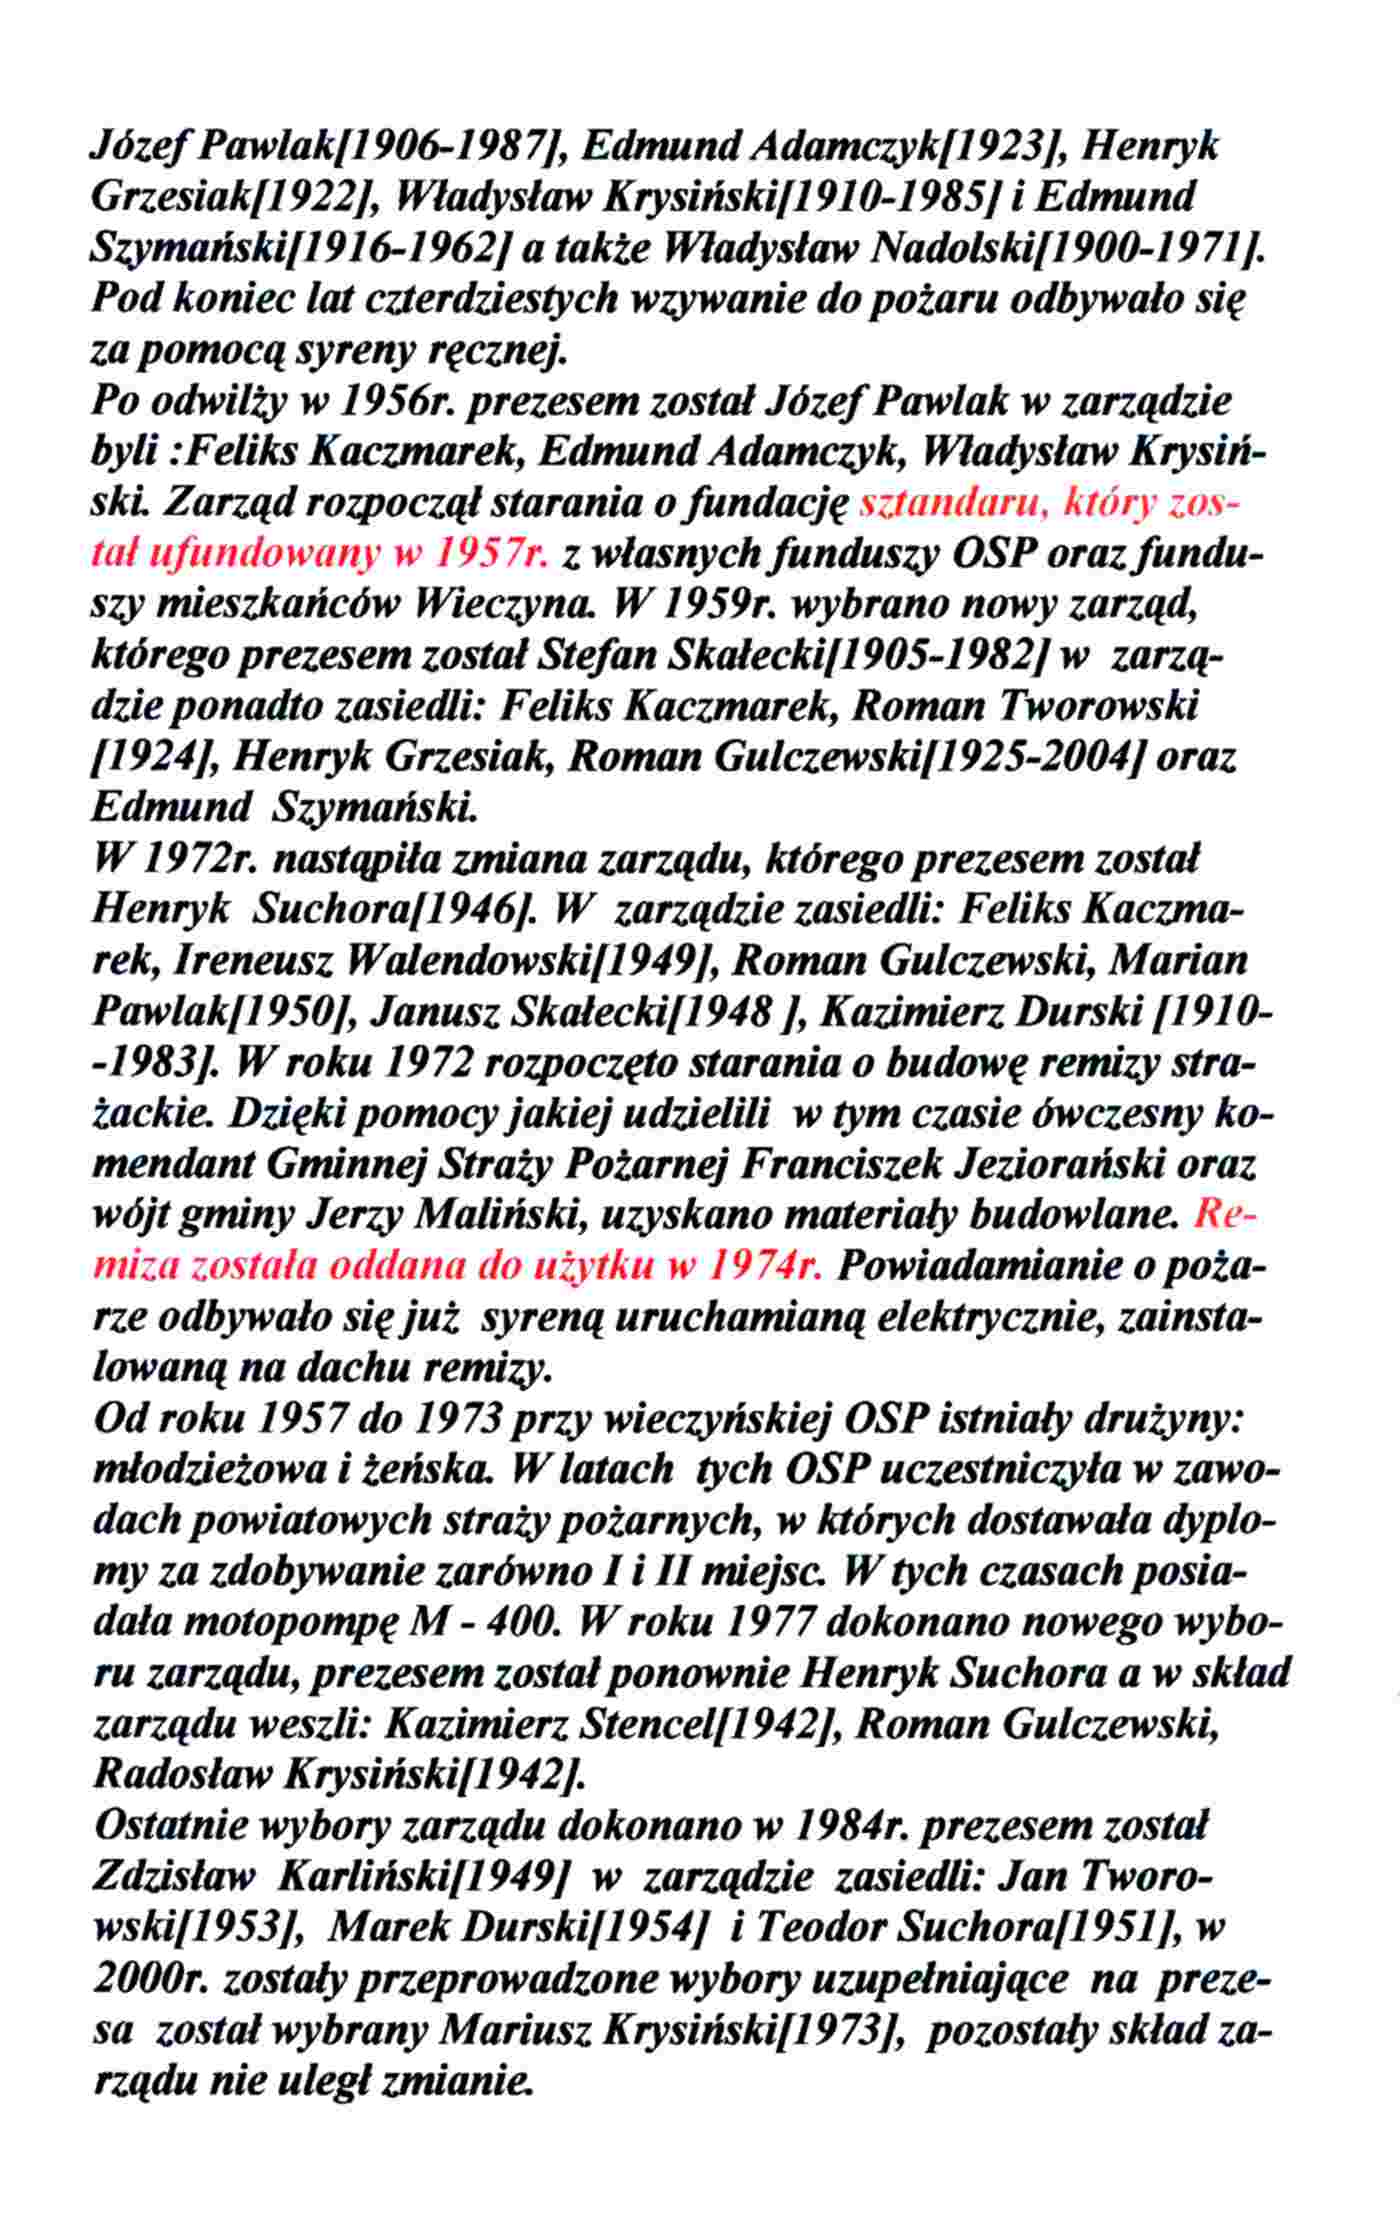 kronika wieczyna - aalf18-Ochotnicza Straż Pożarna w Wieczynie 1924-2000 - b.jpg